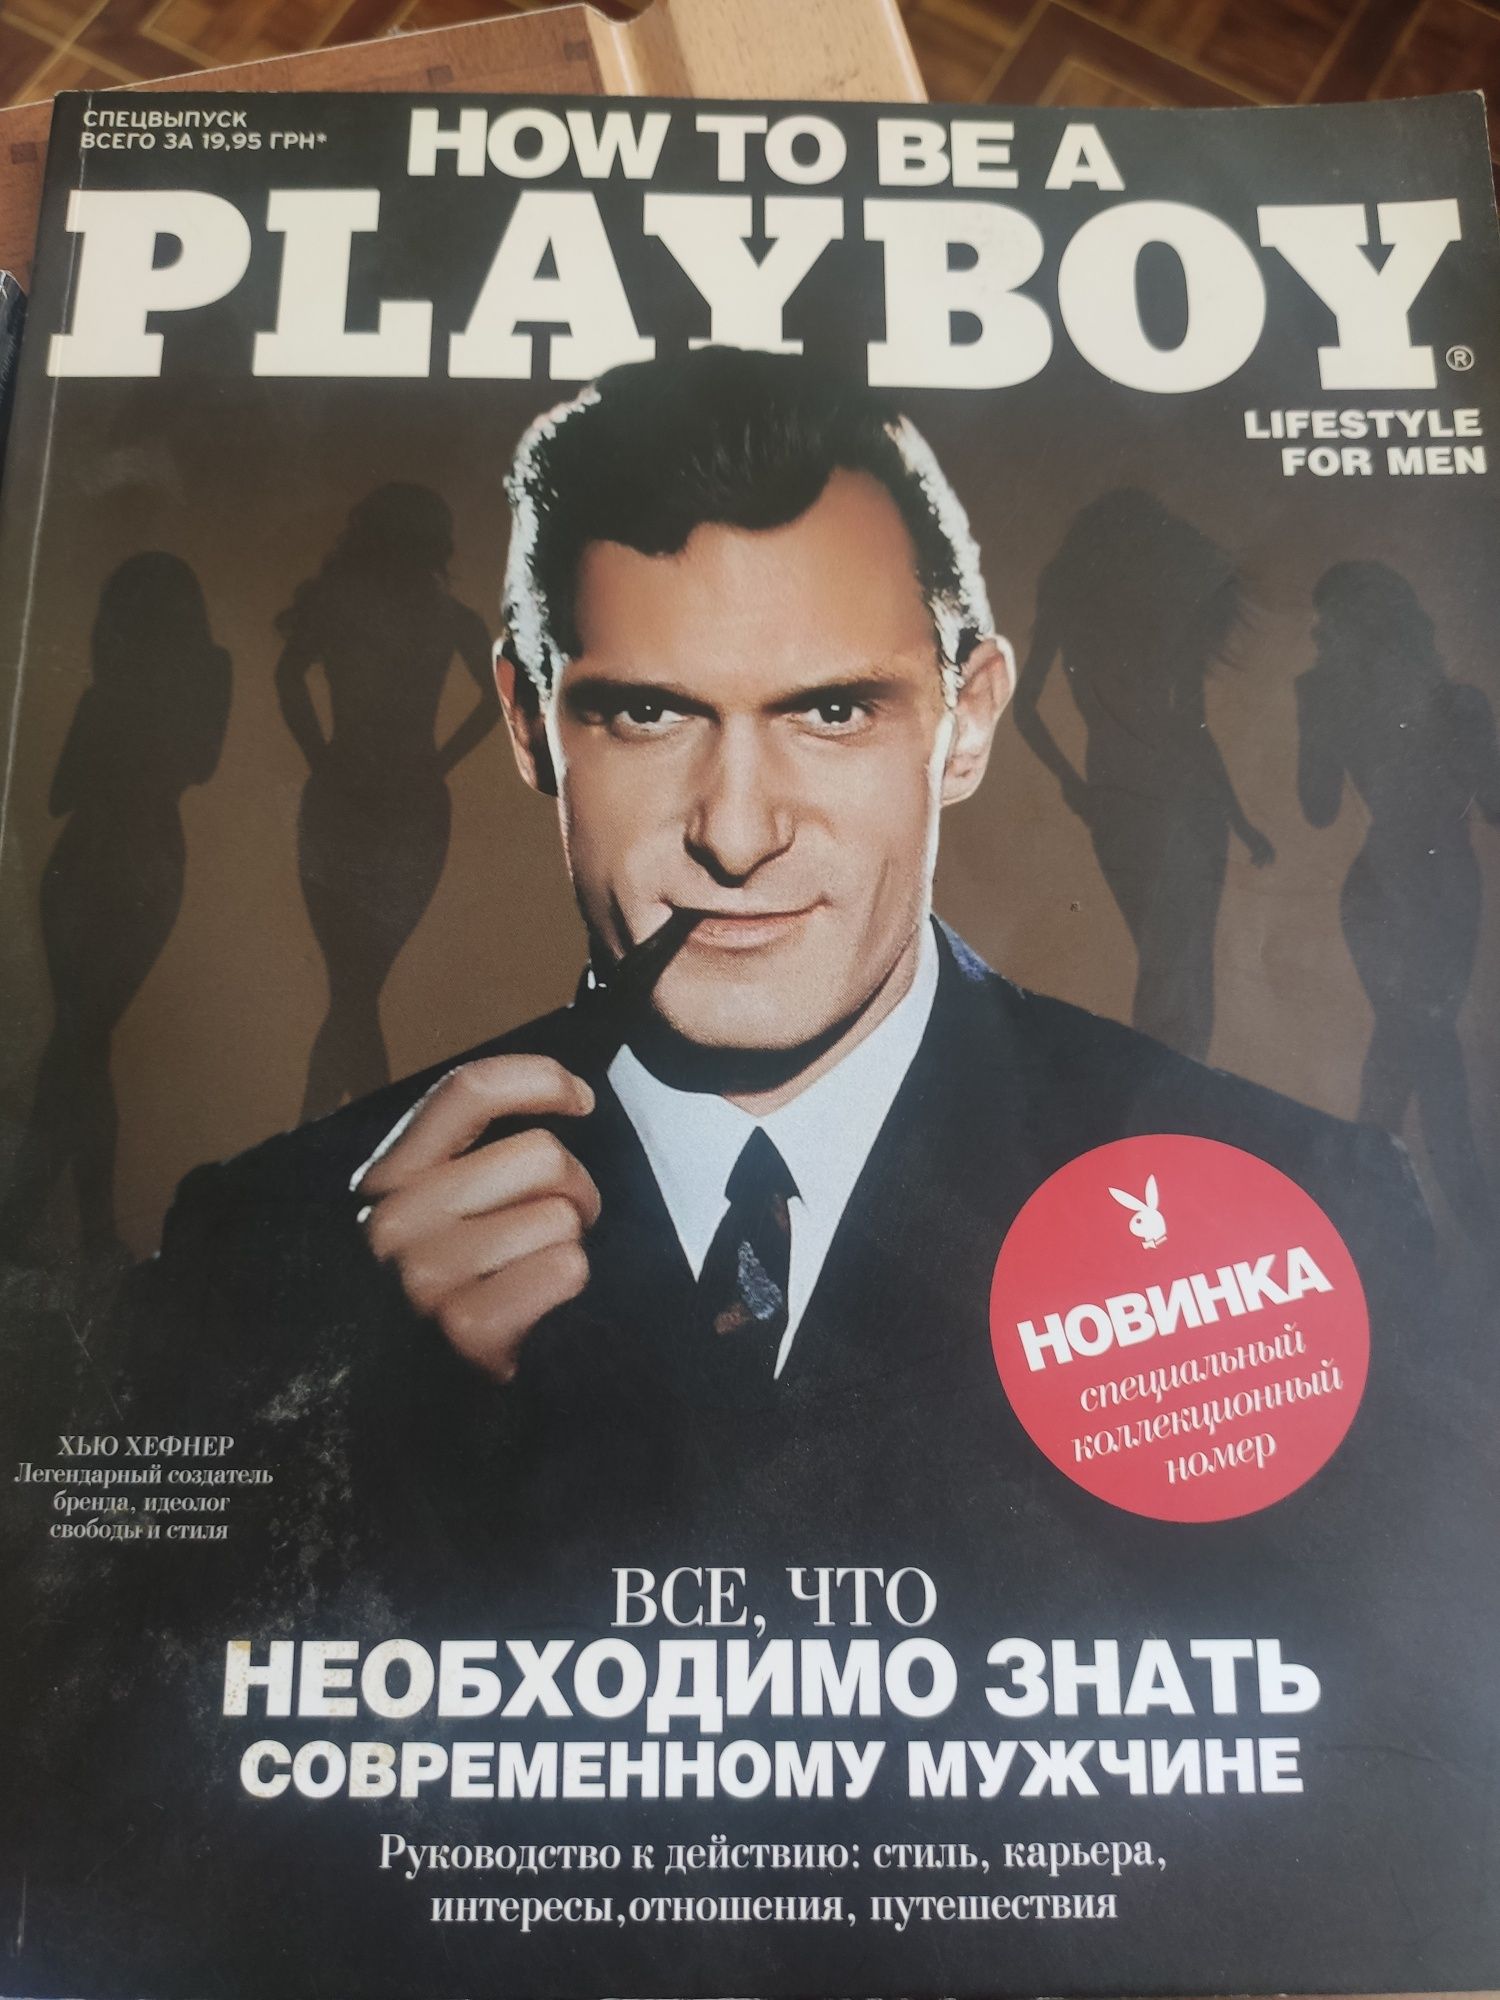 Предлагаю к покупке журнал "Playboy" спецвыпуск.